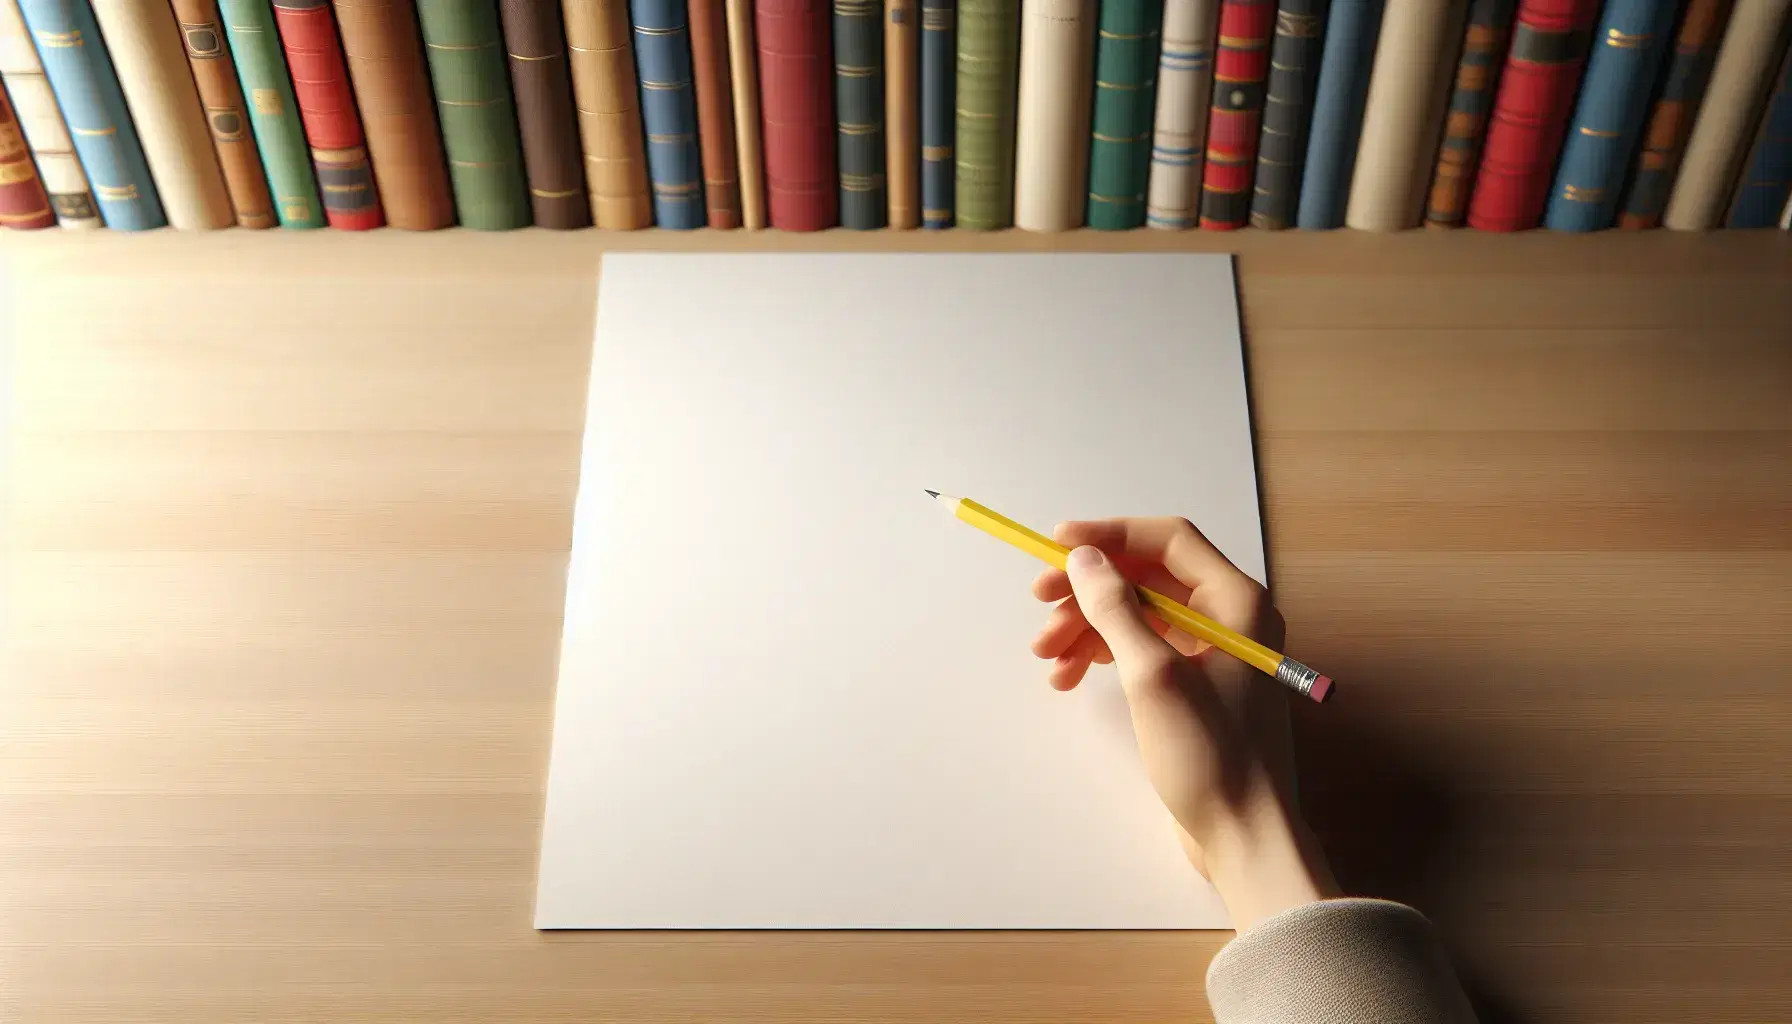 Mano sujetando lápiz amarillo afilado sobre hoja blanca en superficie de madera clara, con estantería de libros coloridos desenfocados al fondo.